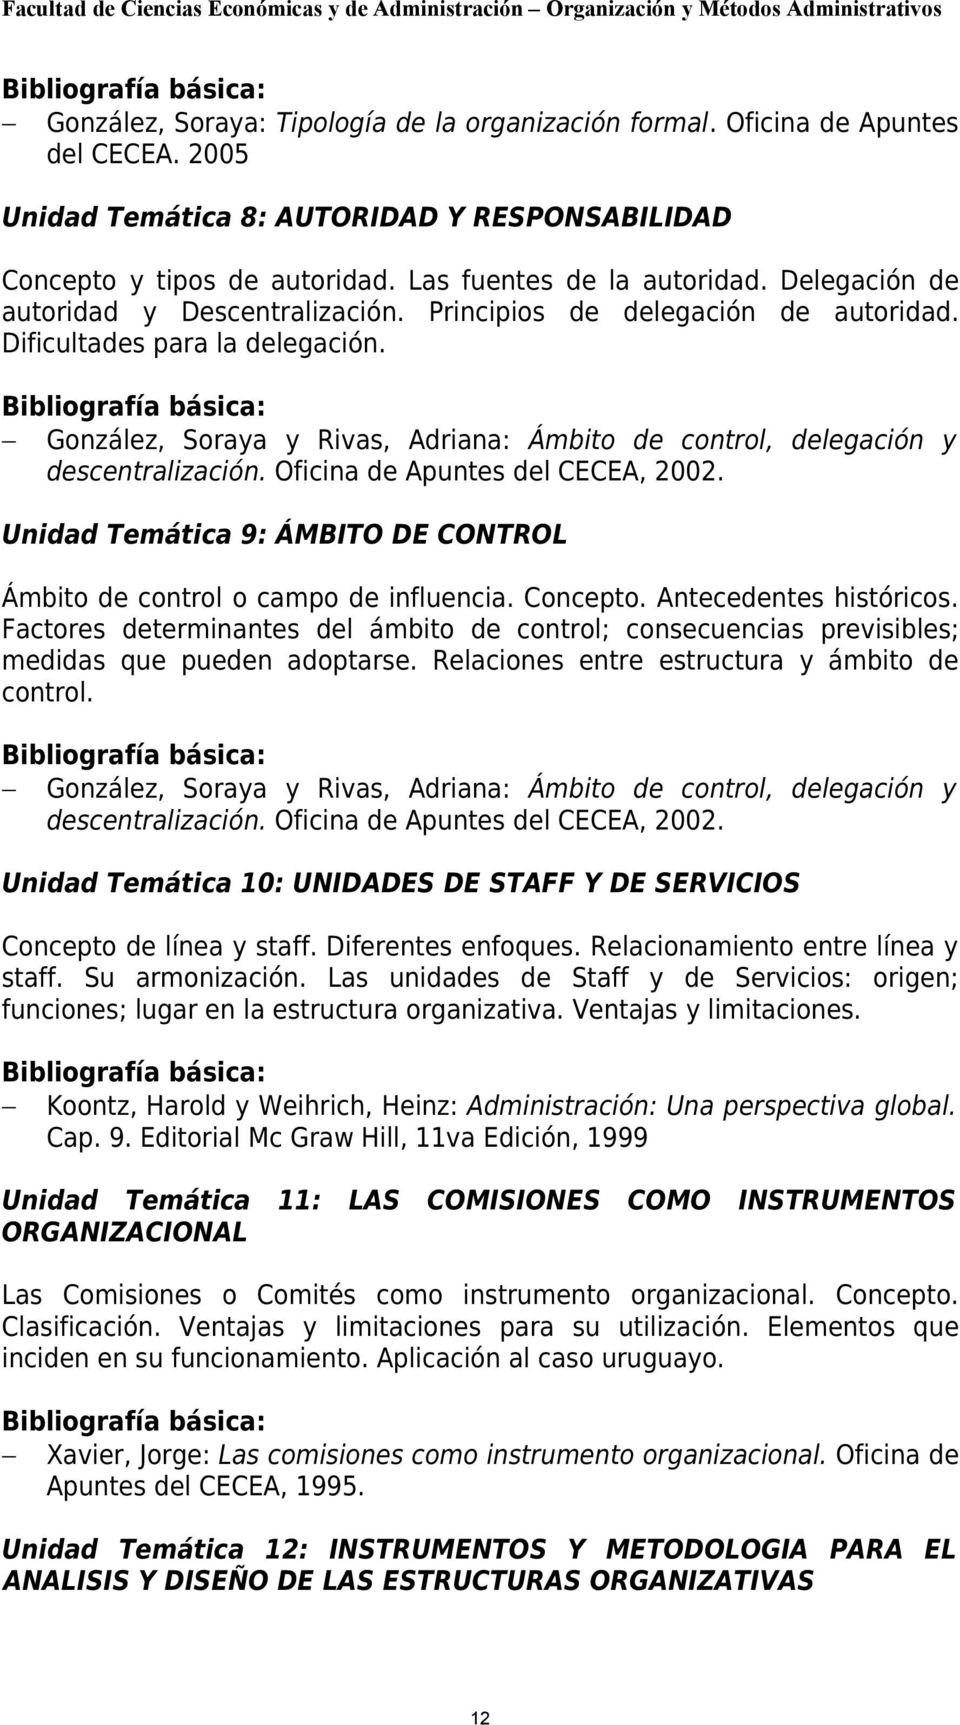 Bibliografía básica: González, Soraya y Rivas, Adriana: Ámbito de control, delegación y descentralización. Oficina de Apuntes del CECEA, 2002.